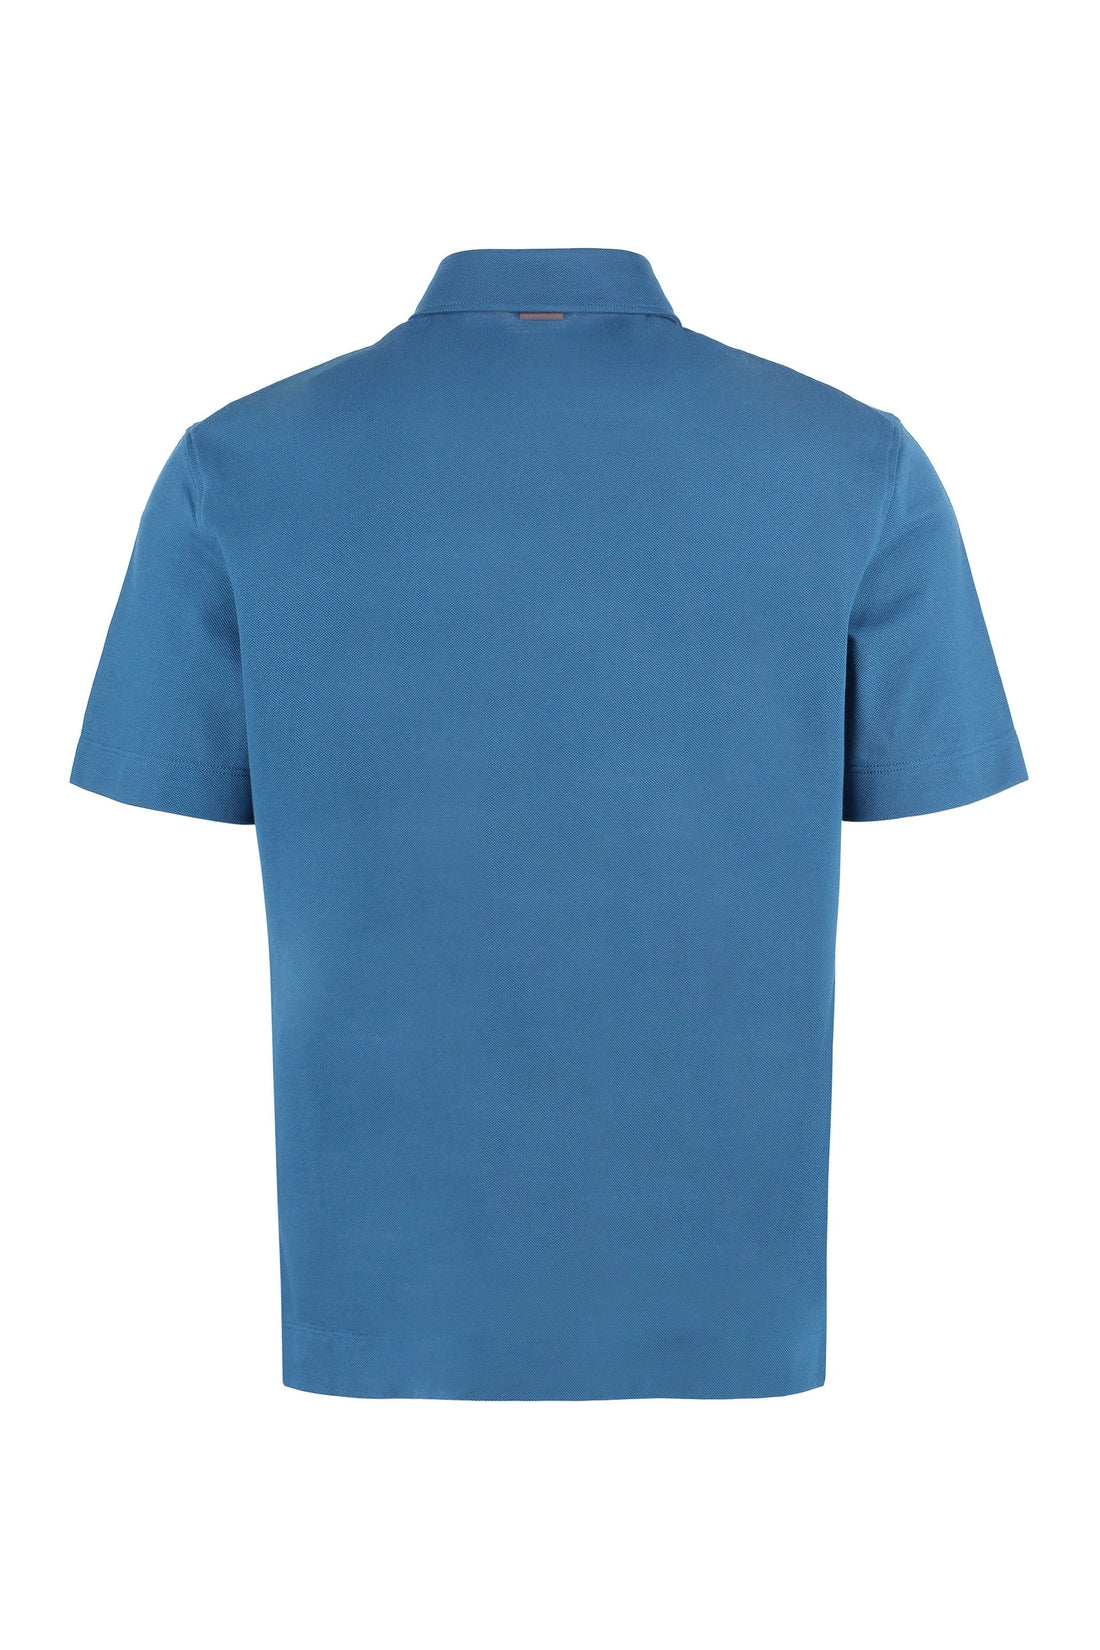 Zegna-OUTLET-SALE-Short sleeve cotton polo shirt-ARCHIVIST